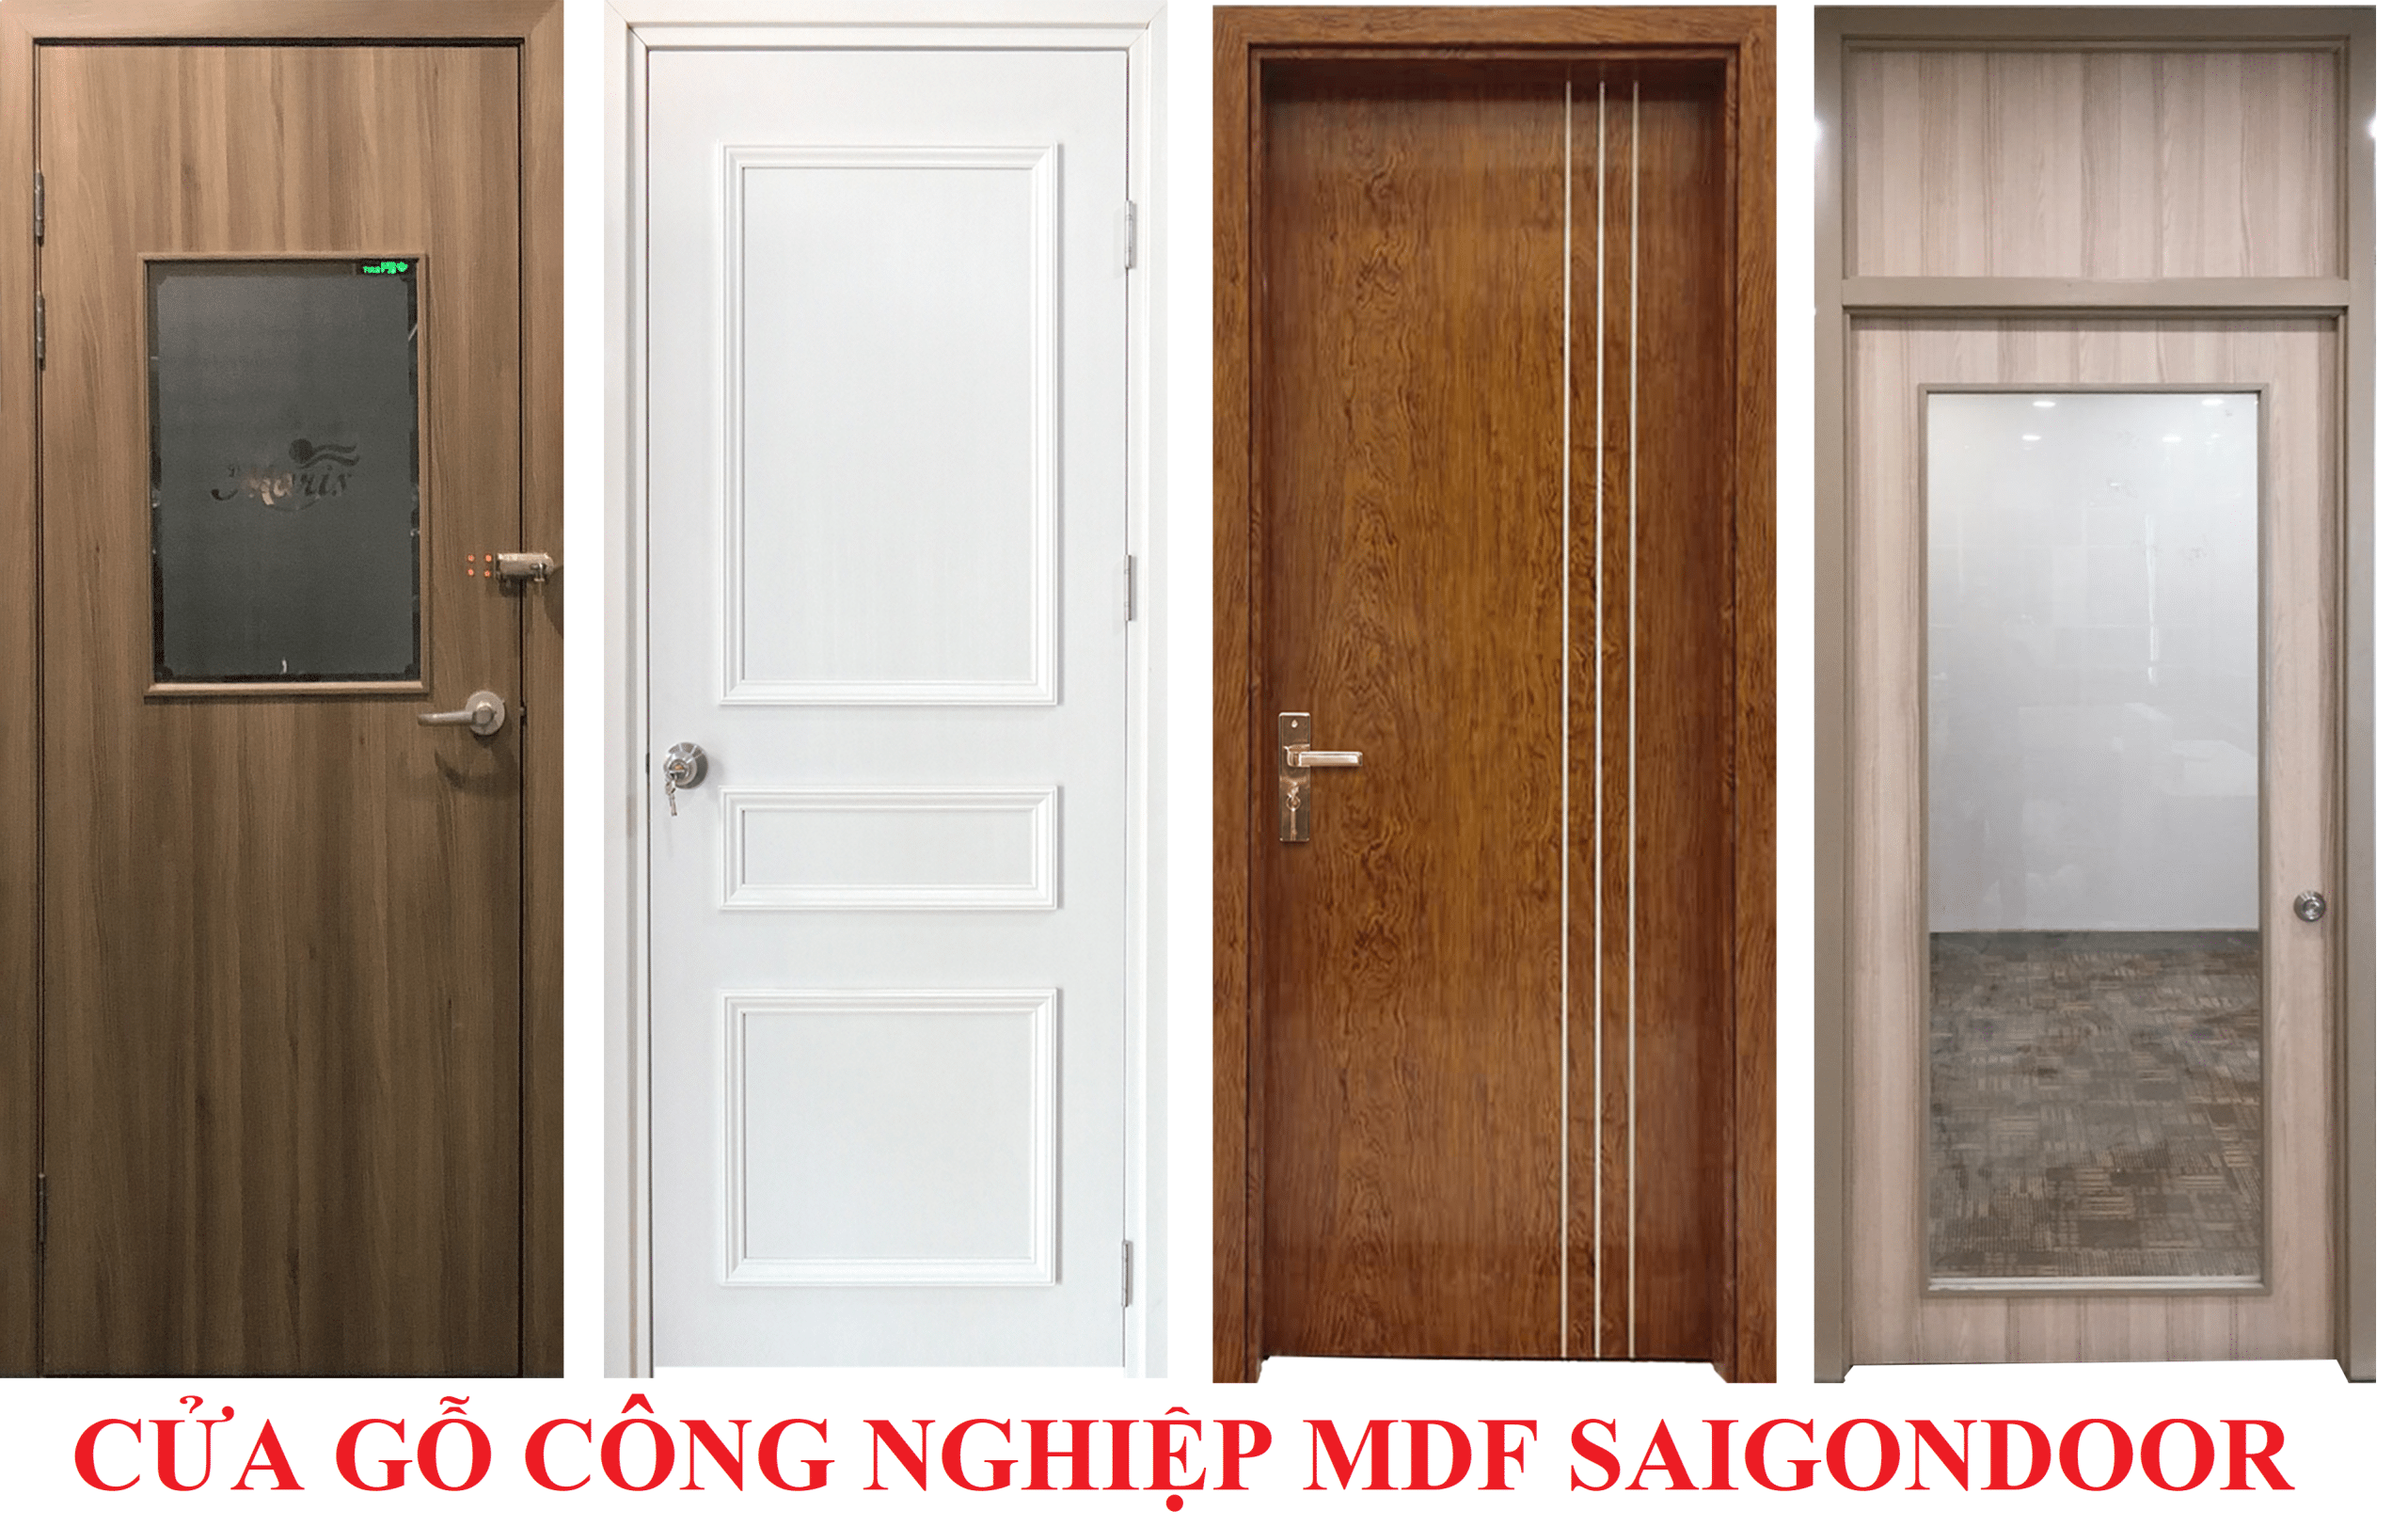 Giá cửa gỗ công nghiệp Mdf Veneer rẻ nhất Cua-go-cong-nghiep-SGD-Melamine-P1G11